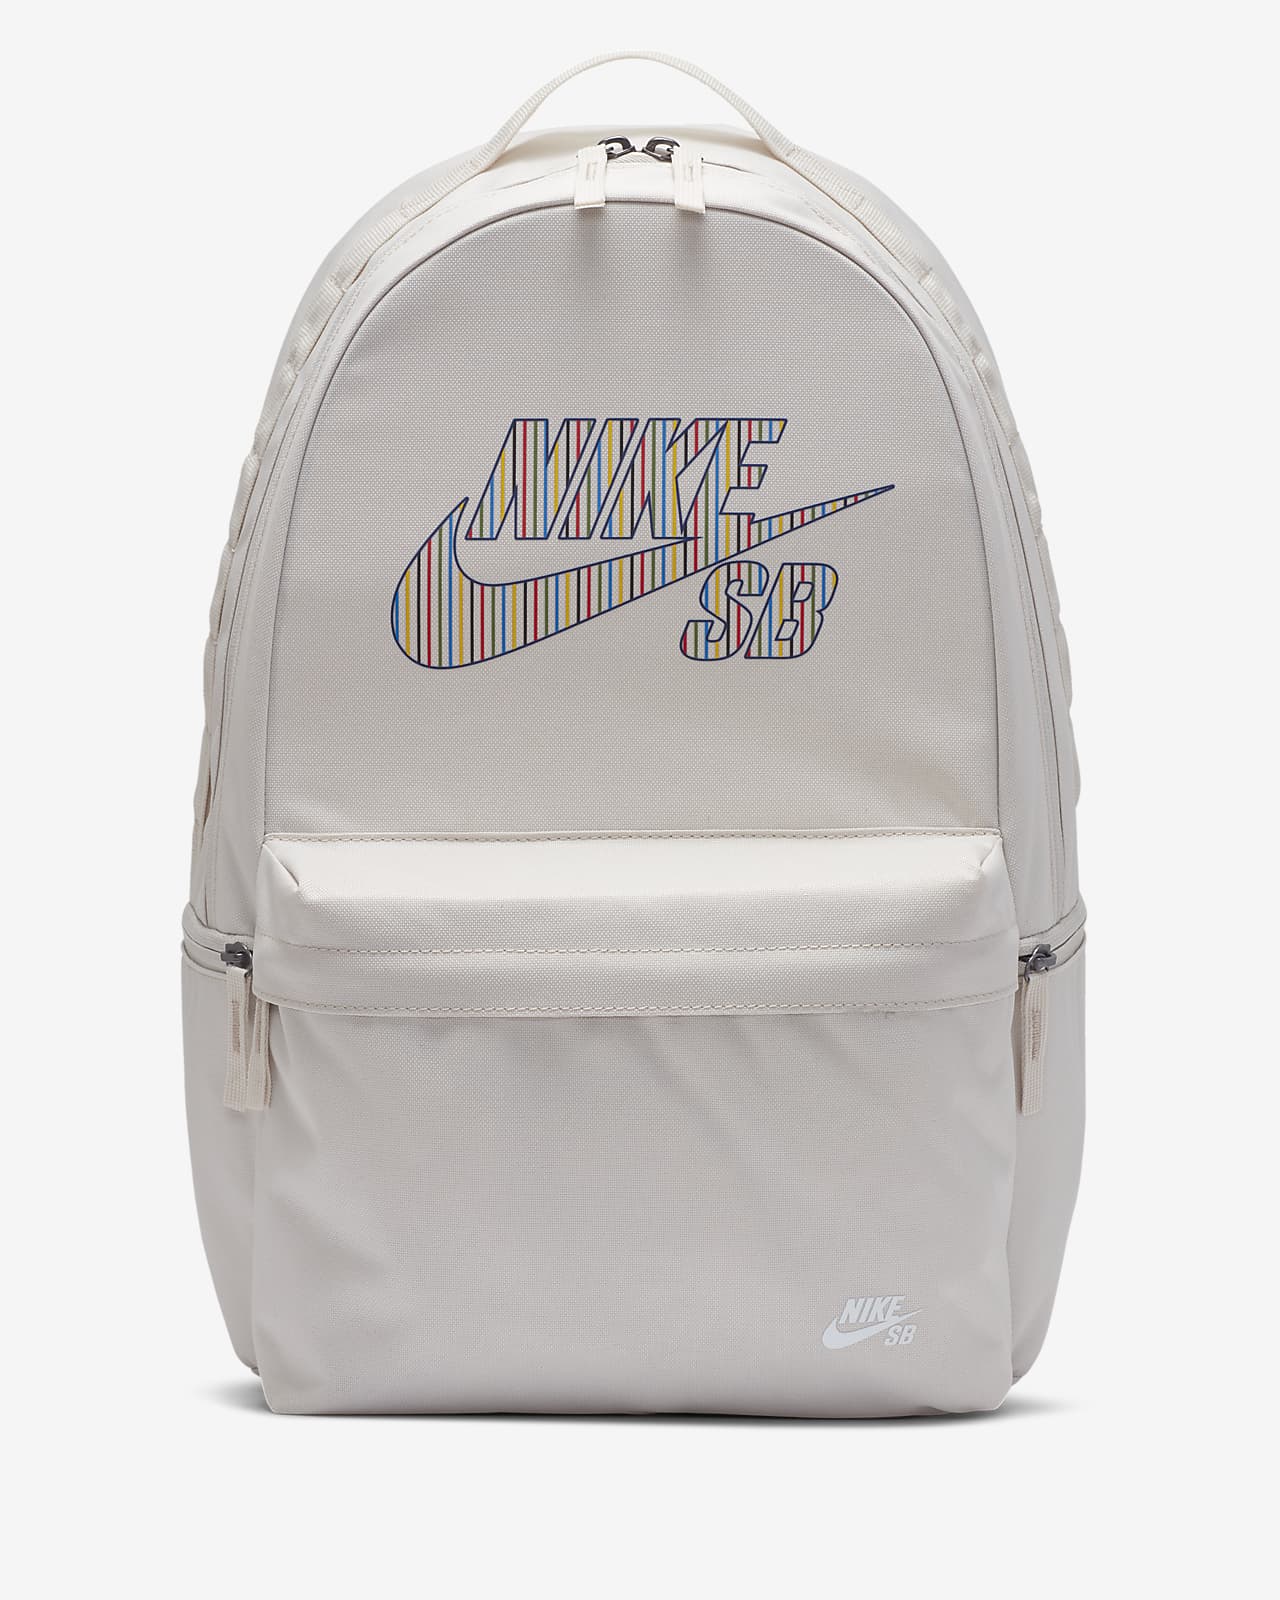 nike sb backpack white